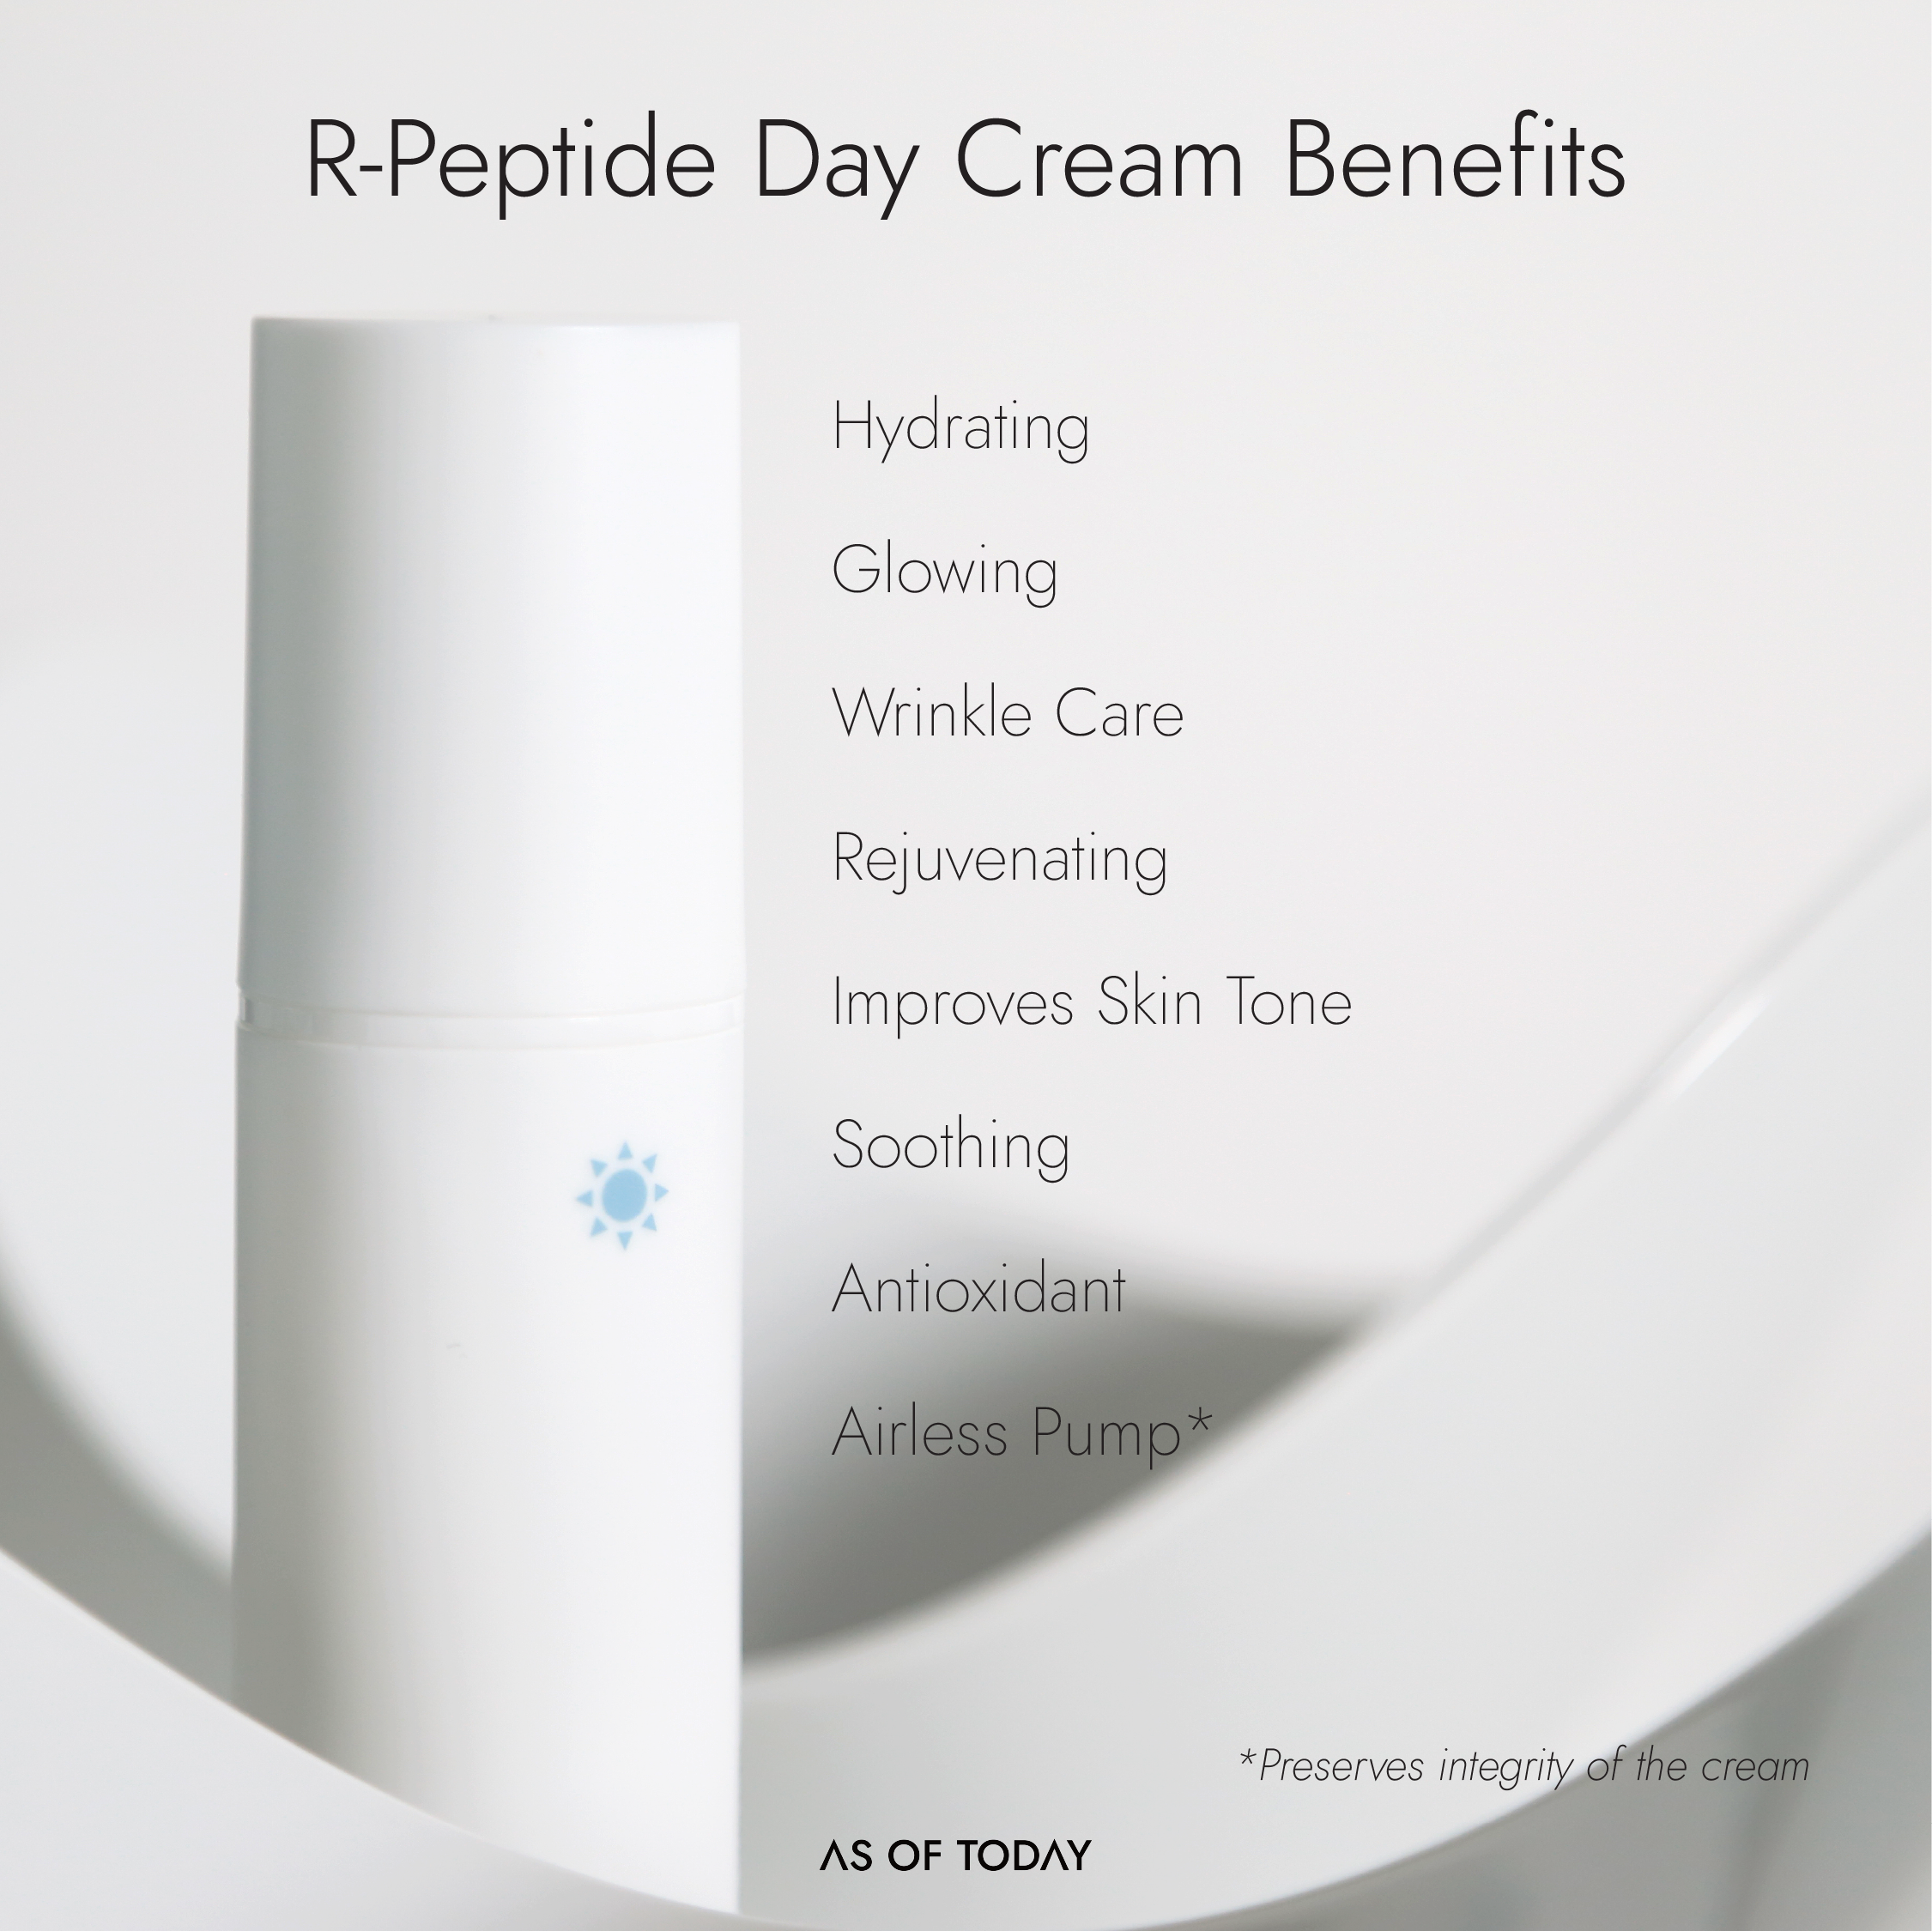 R-Peptide Day Cream